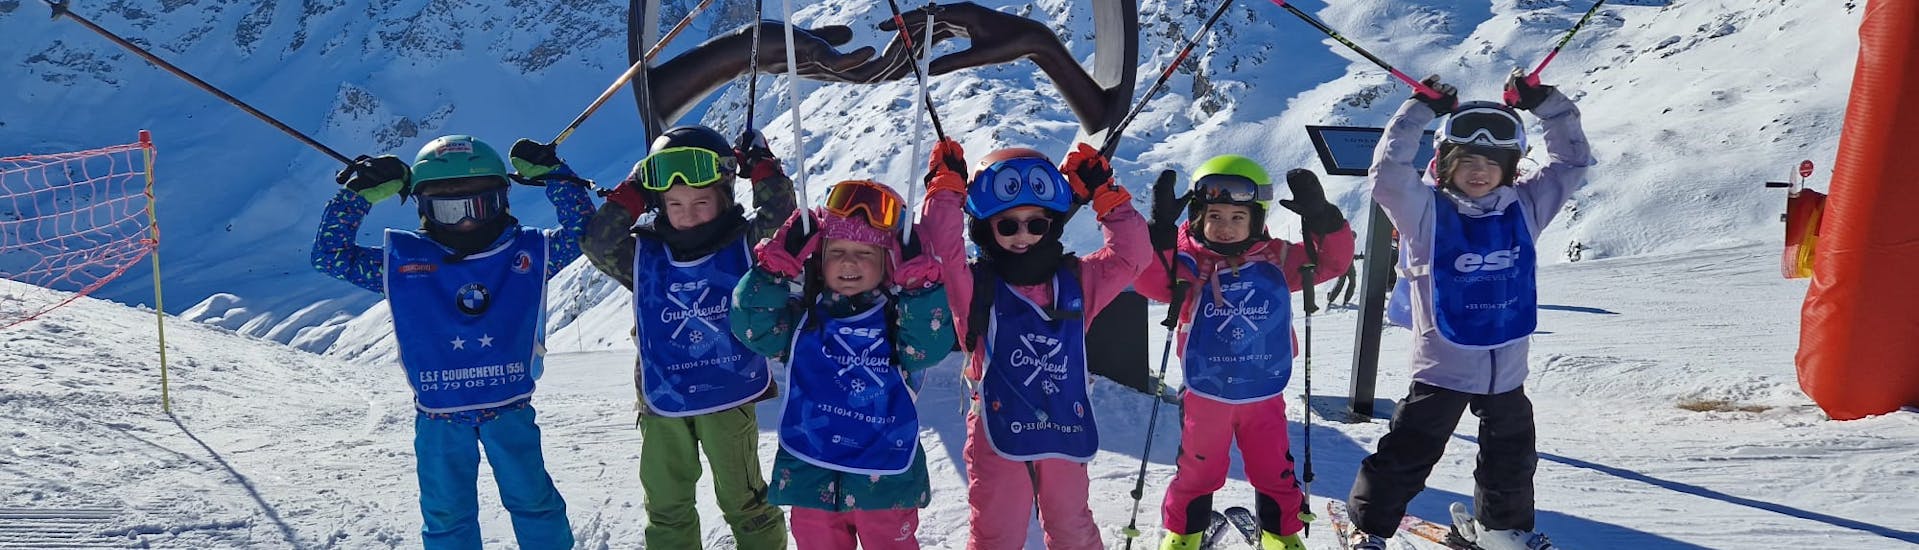 Clases de esquí para niños (6-12 años).